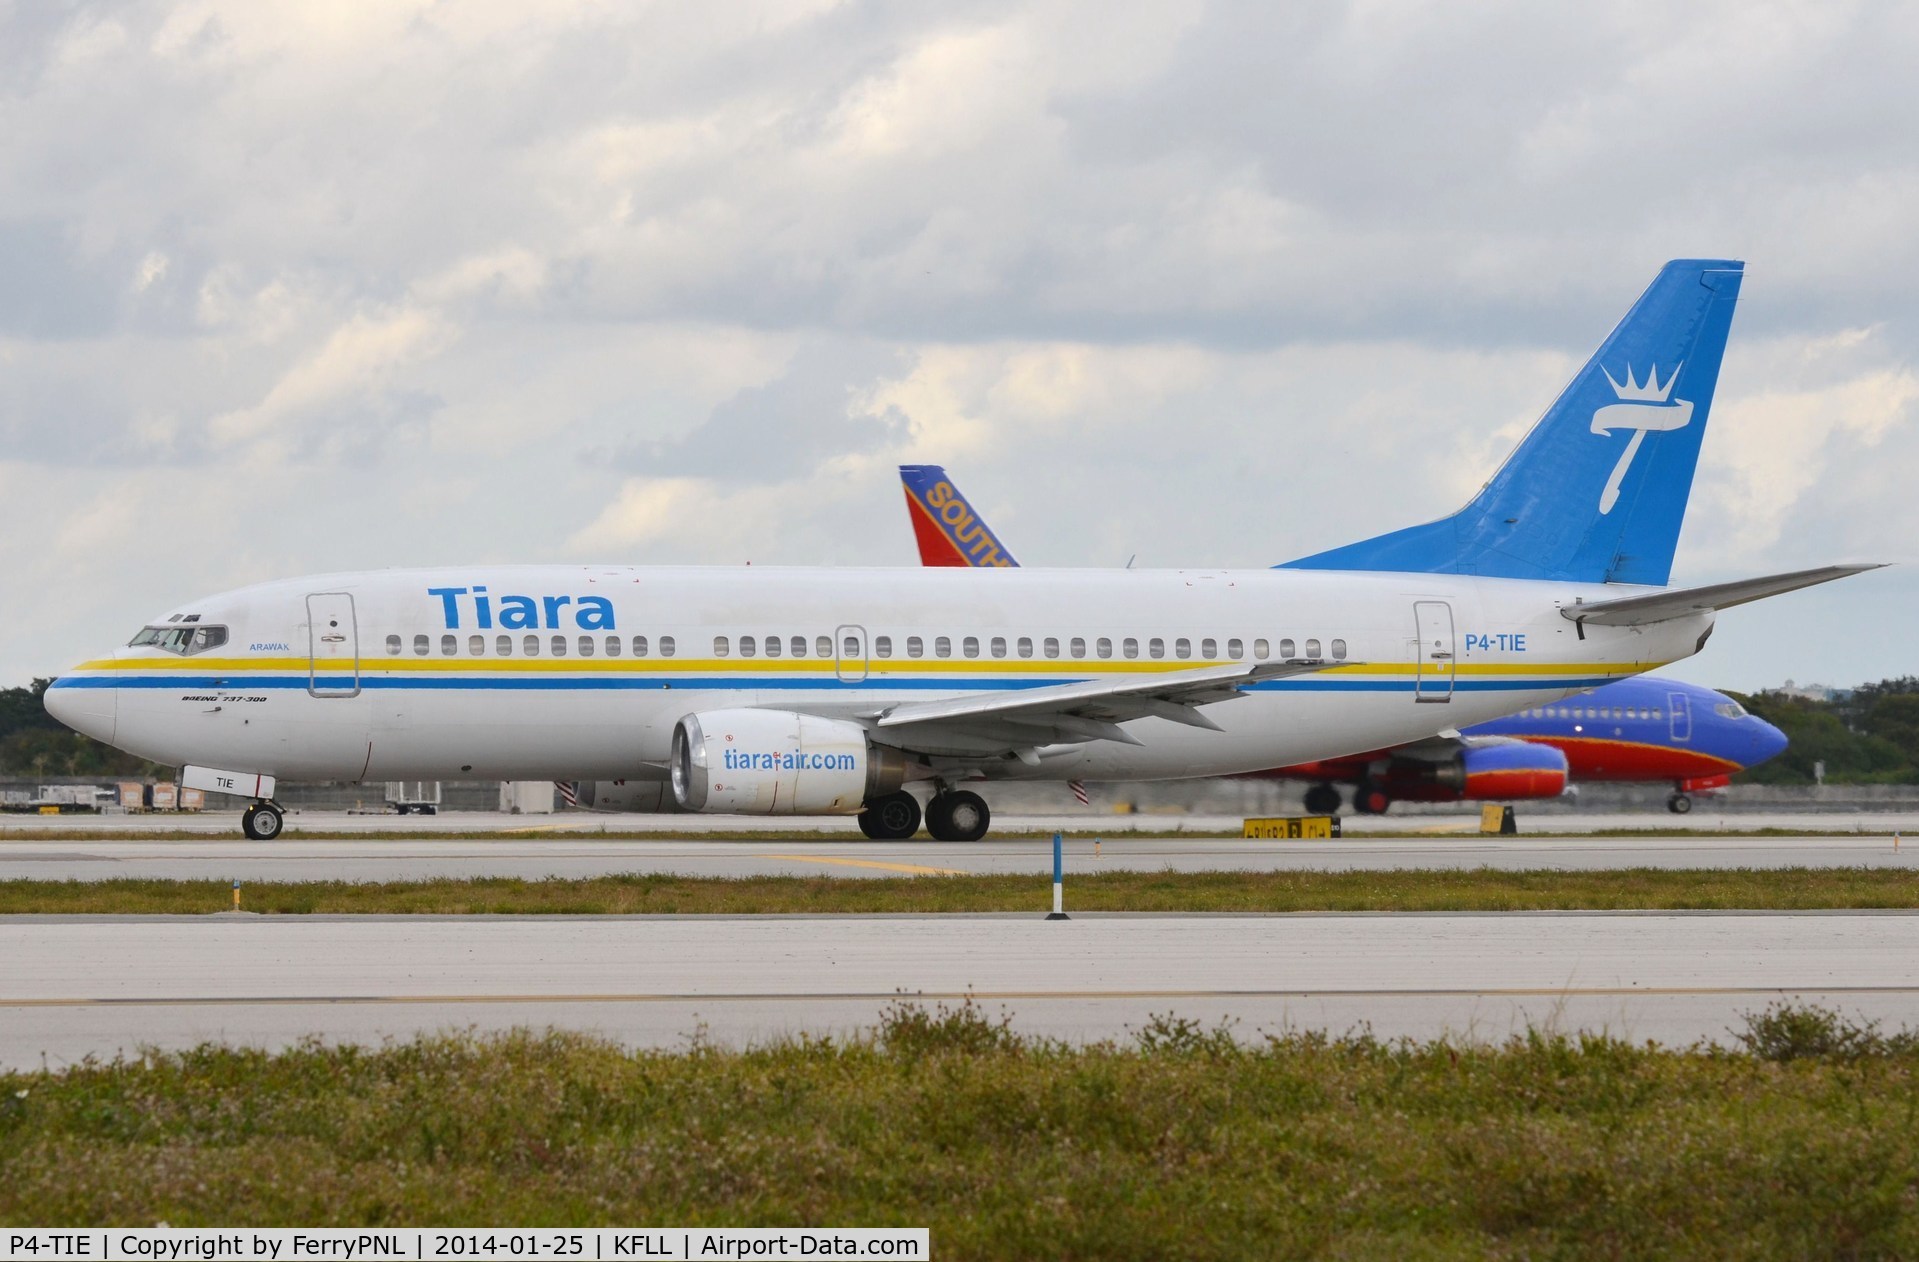 P4-TIE, 1988 Boeing 737-322 C/N 24249, Tiara B733 taxying for departure